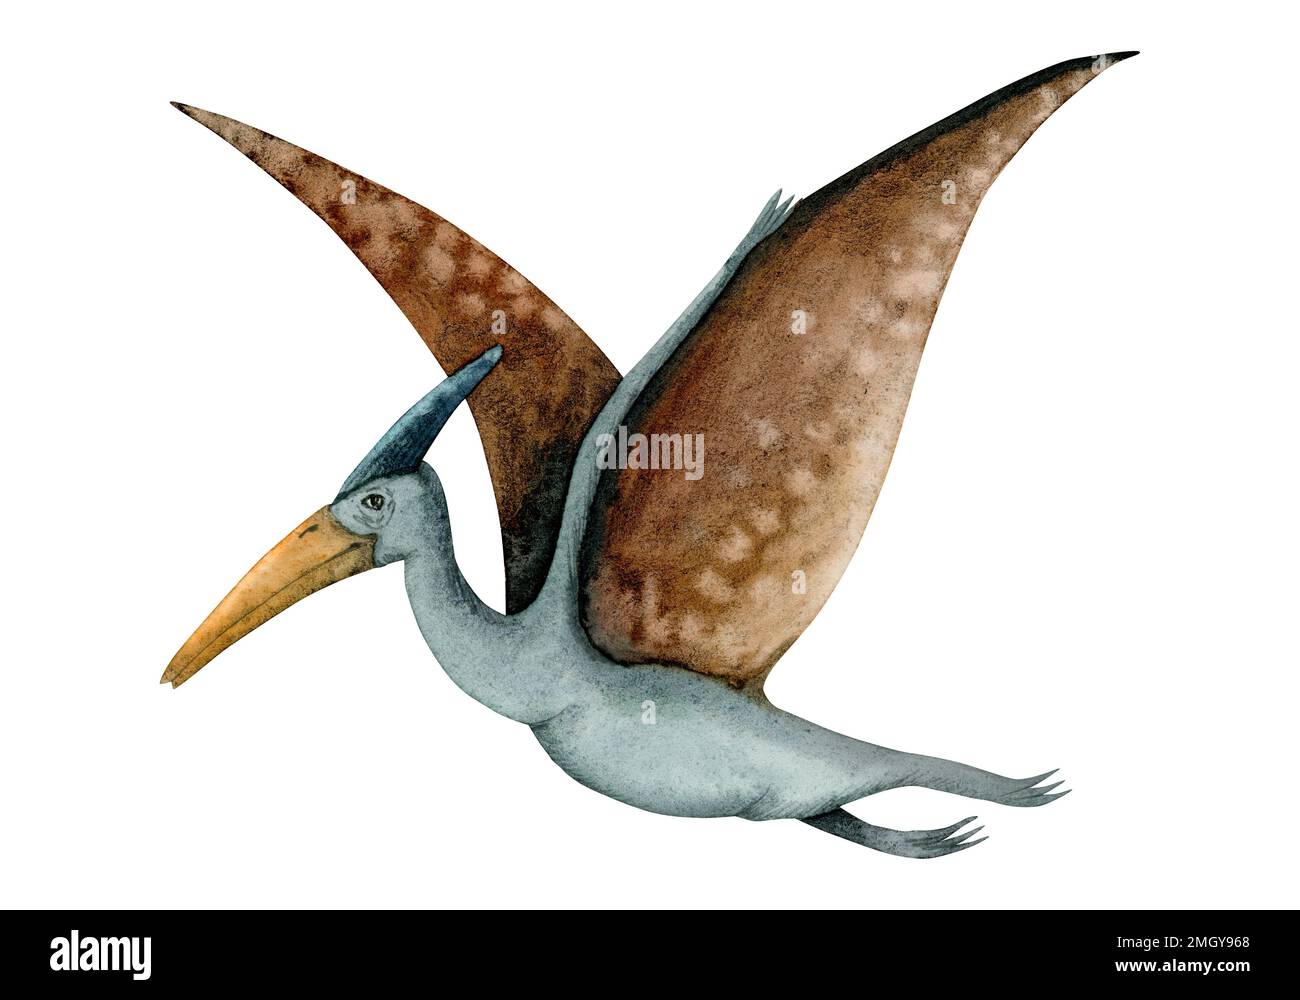 Pterodattile di colore marrone e blu. Pterosauro con ampie ali dell'era dei dinosauri isolato su sfondo bianco. Foto Stock